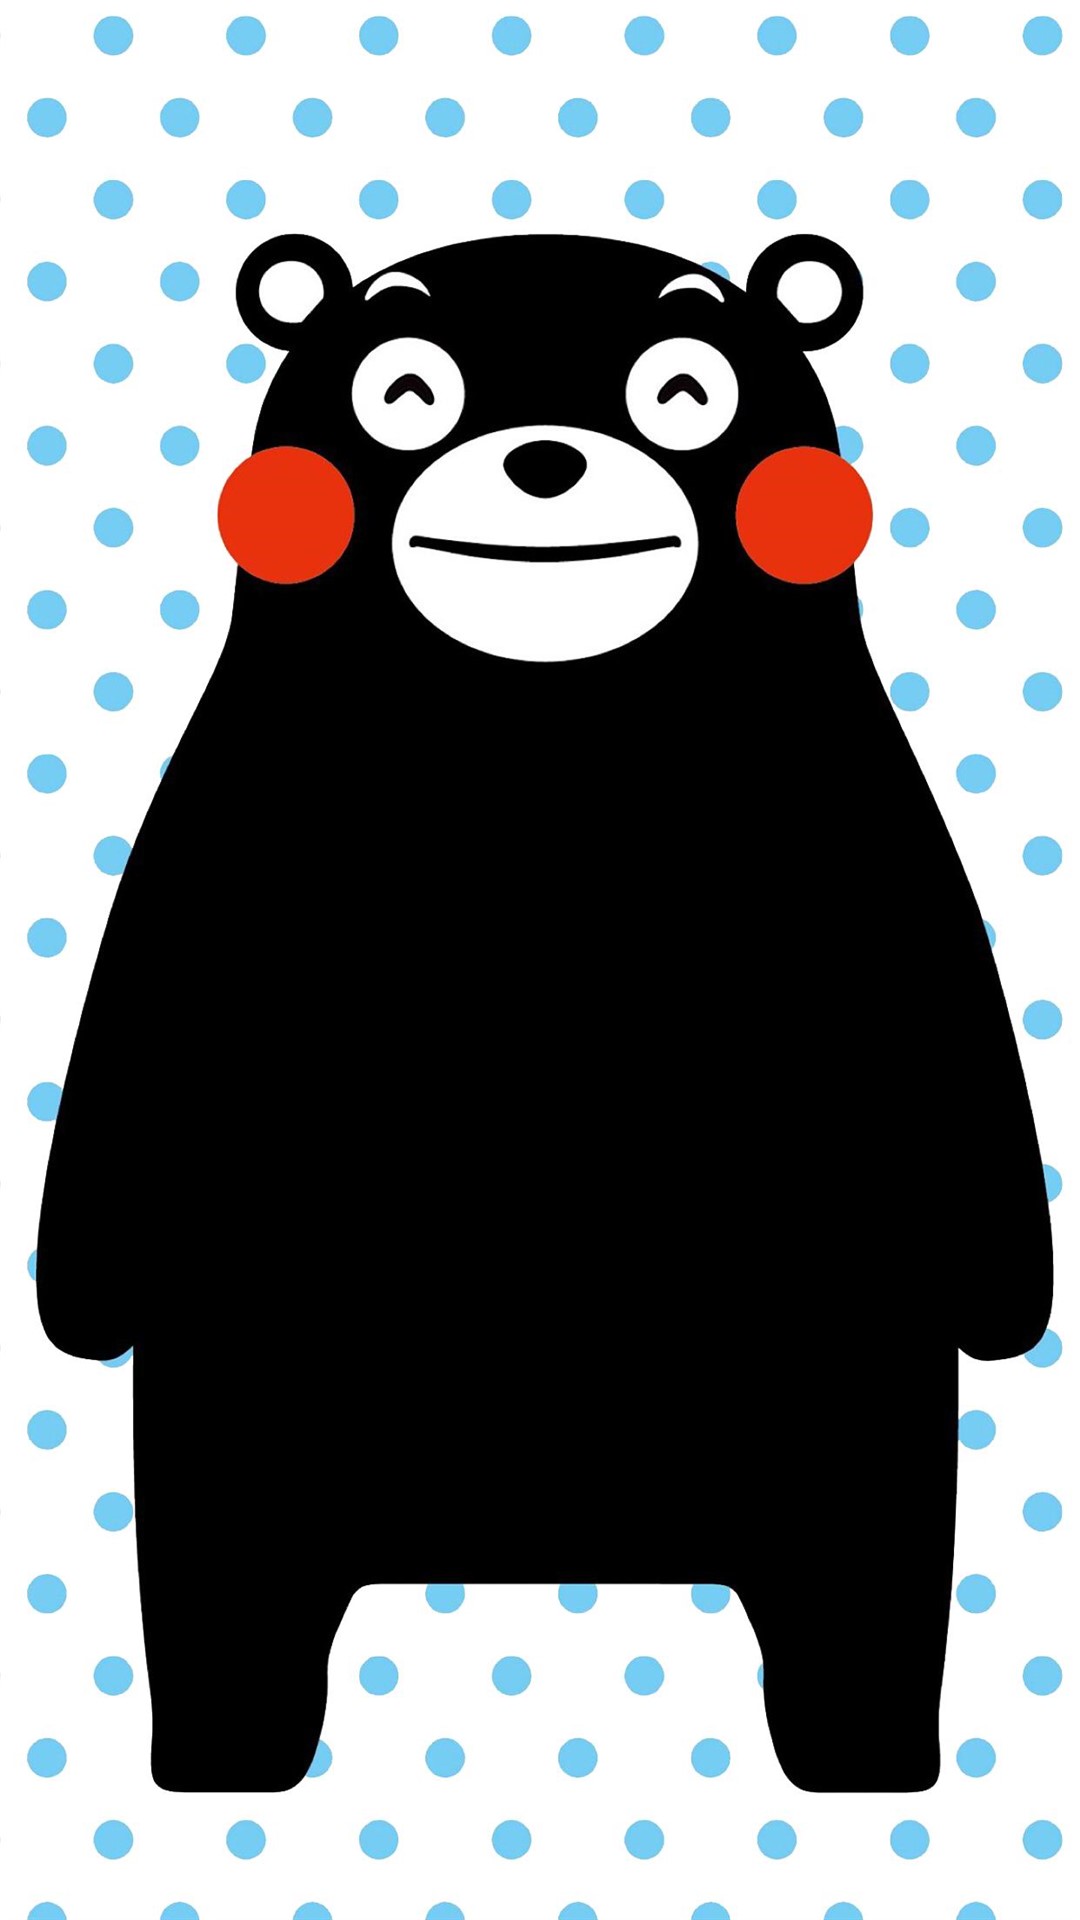 可爱熊本熊手机锁屏壁纸,分辨率1080x1920